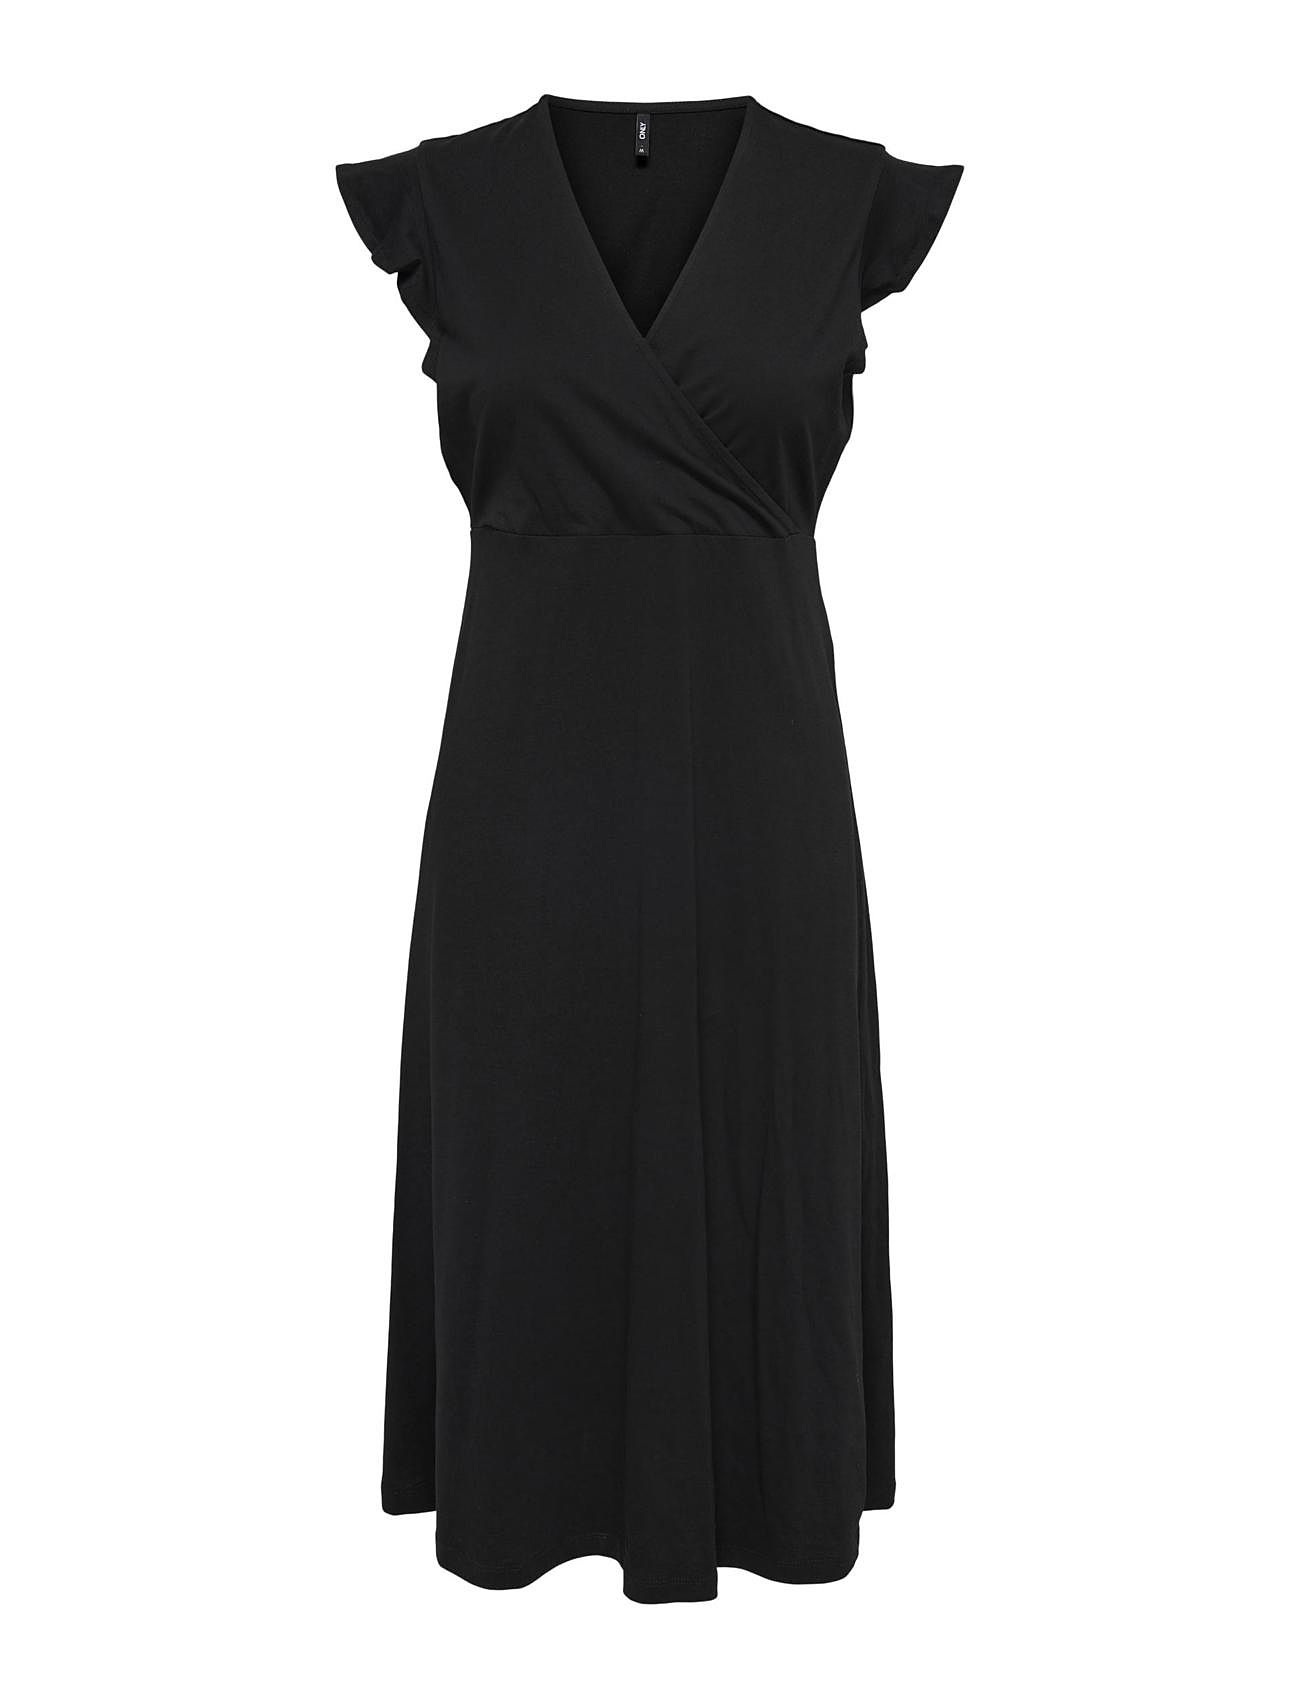 ONLY Onlmay S/l Wrap Midi Dress Box Jrs - Midi dresses - Boozt.com